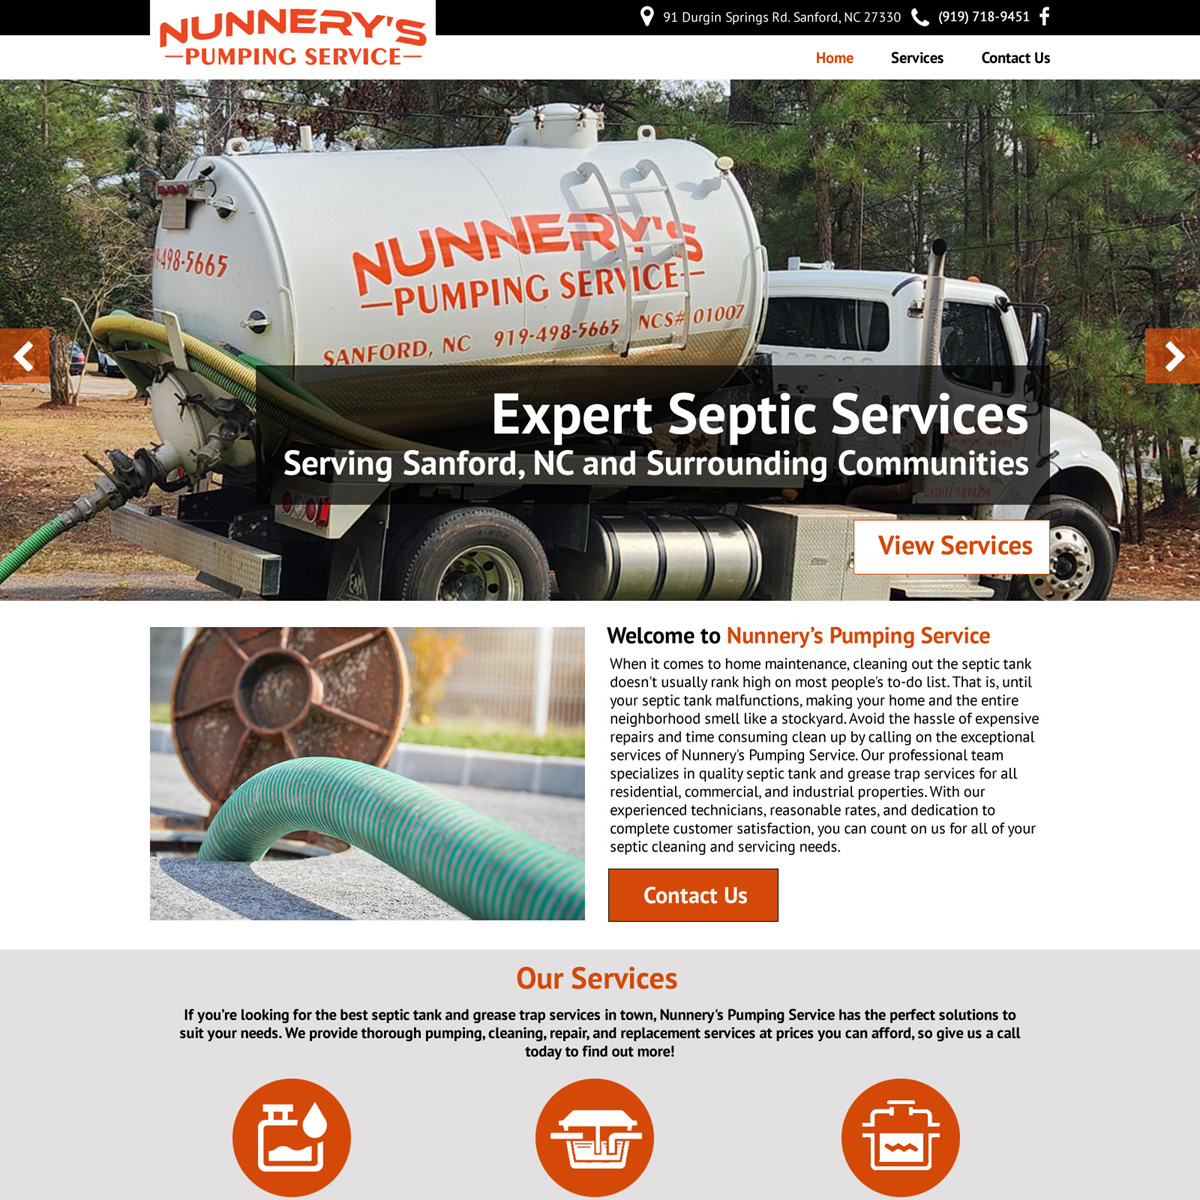 Nunnery’s Pumping Service Website Design